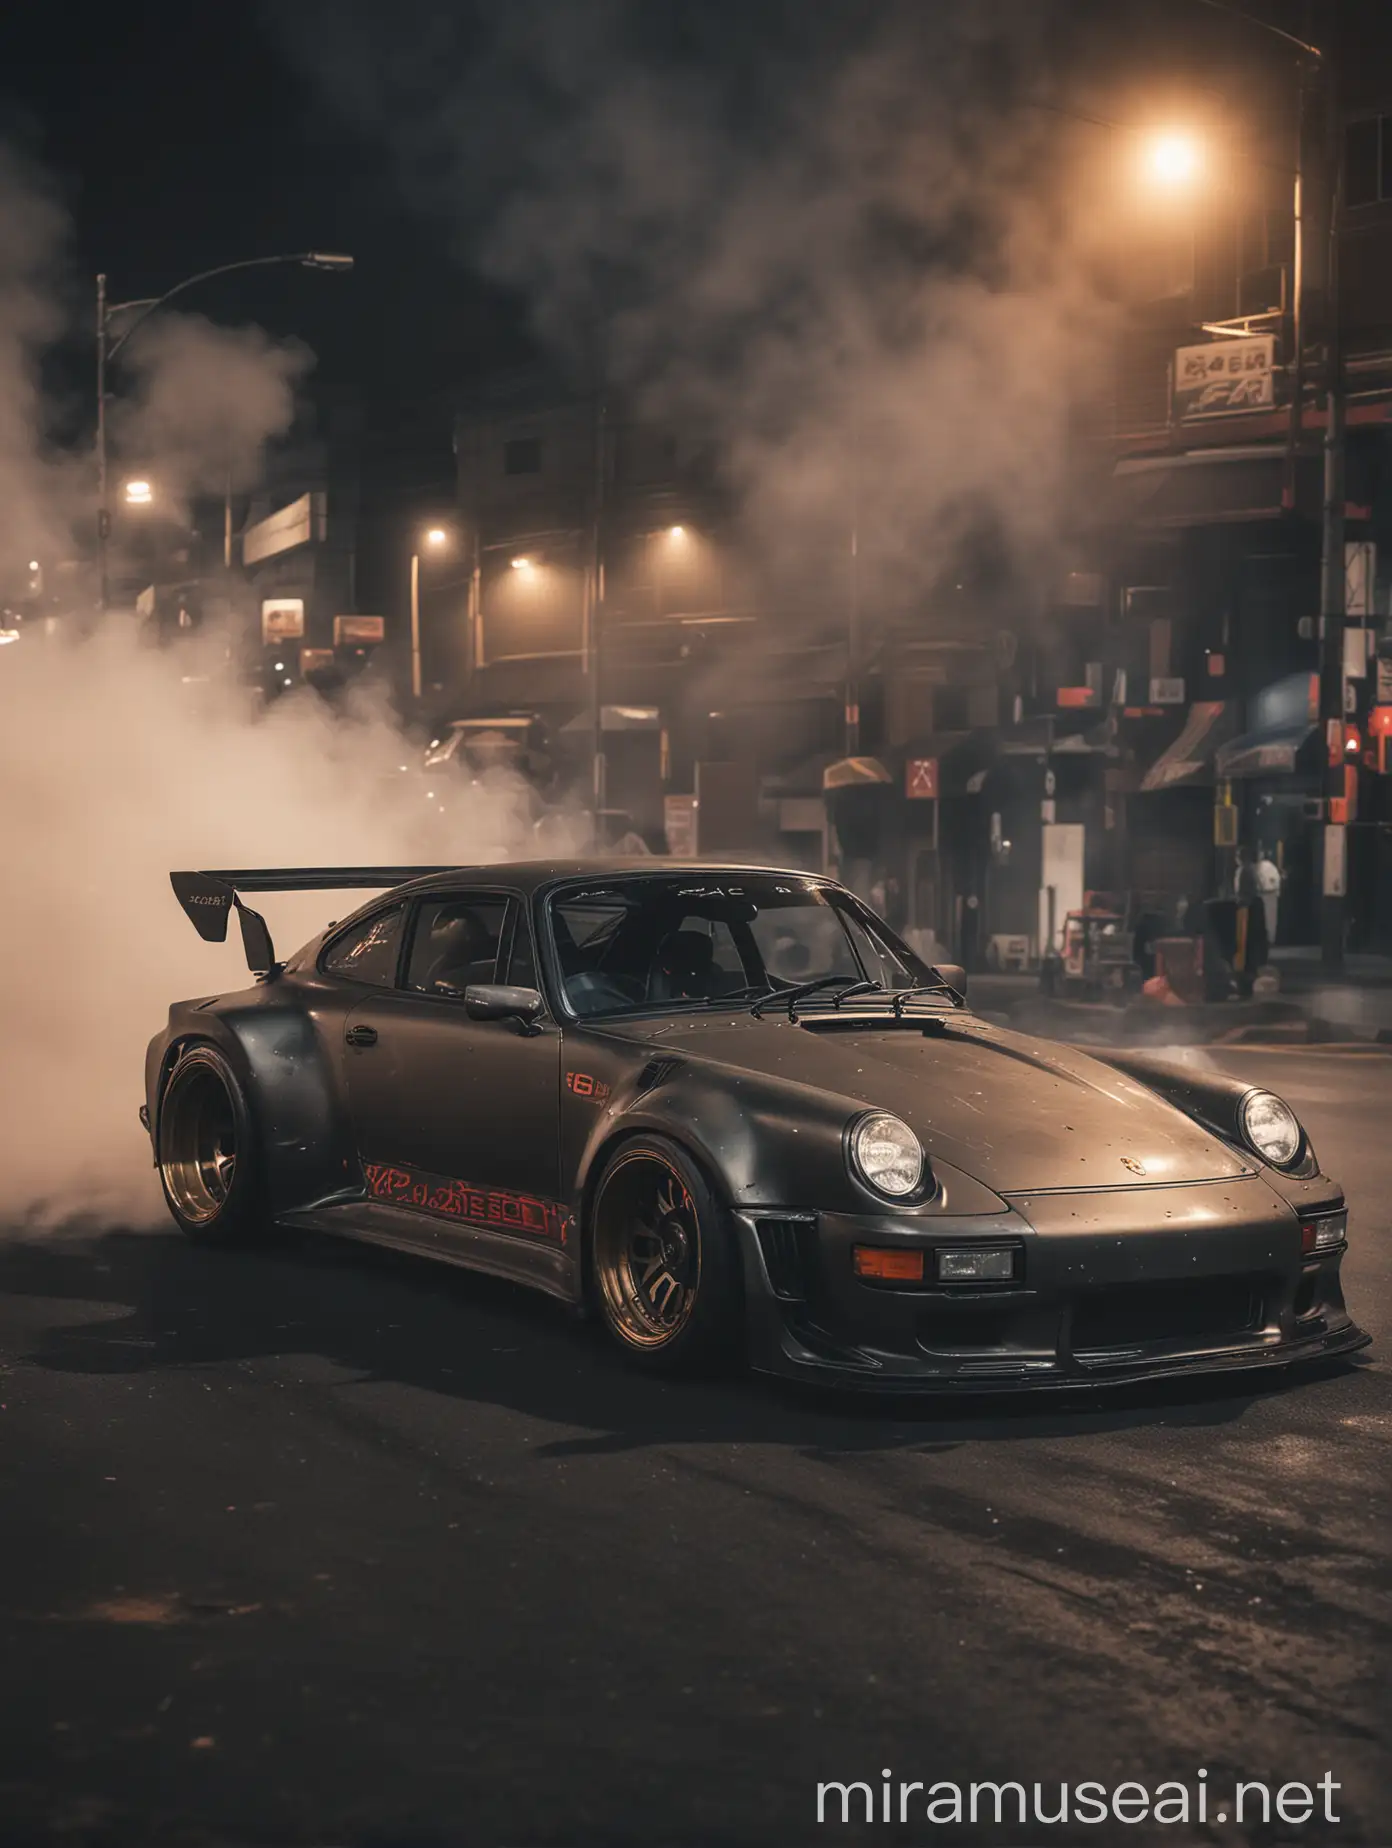 Akira Nakai Style Porsche Drift Photoshoot Dynamic Night Street Scene in Japan